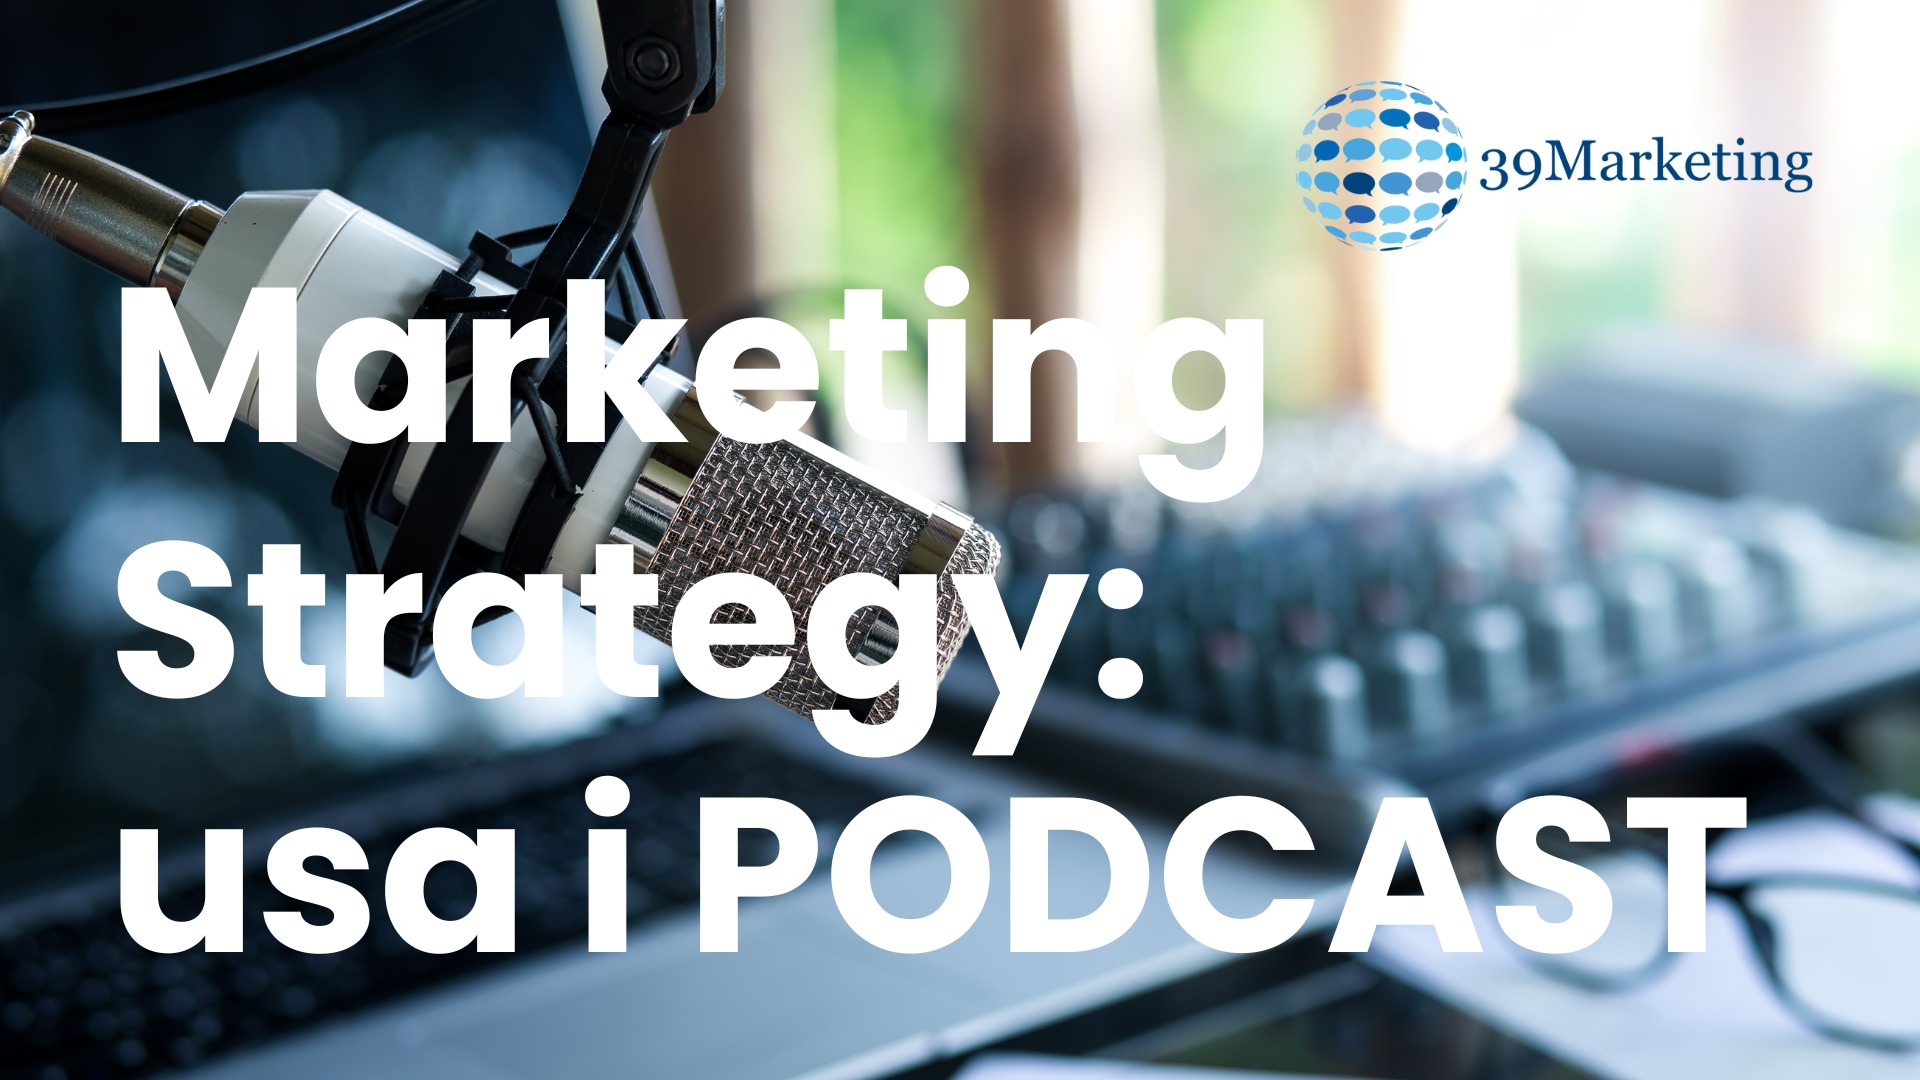 39marketing: l'agenzia di marketing specializzata nella Creazione di Podcast Aziendali